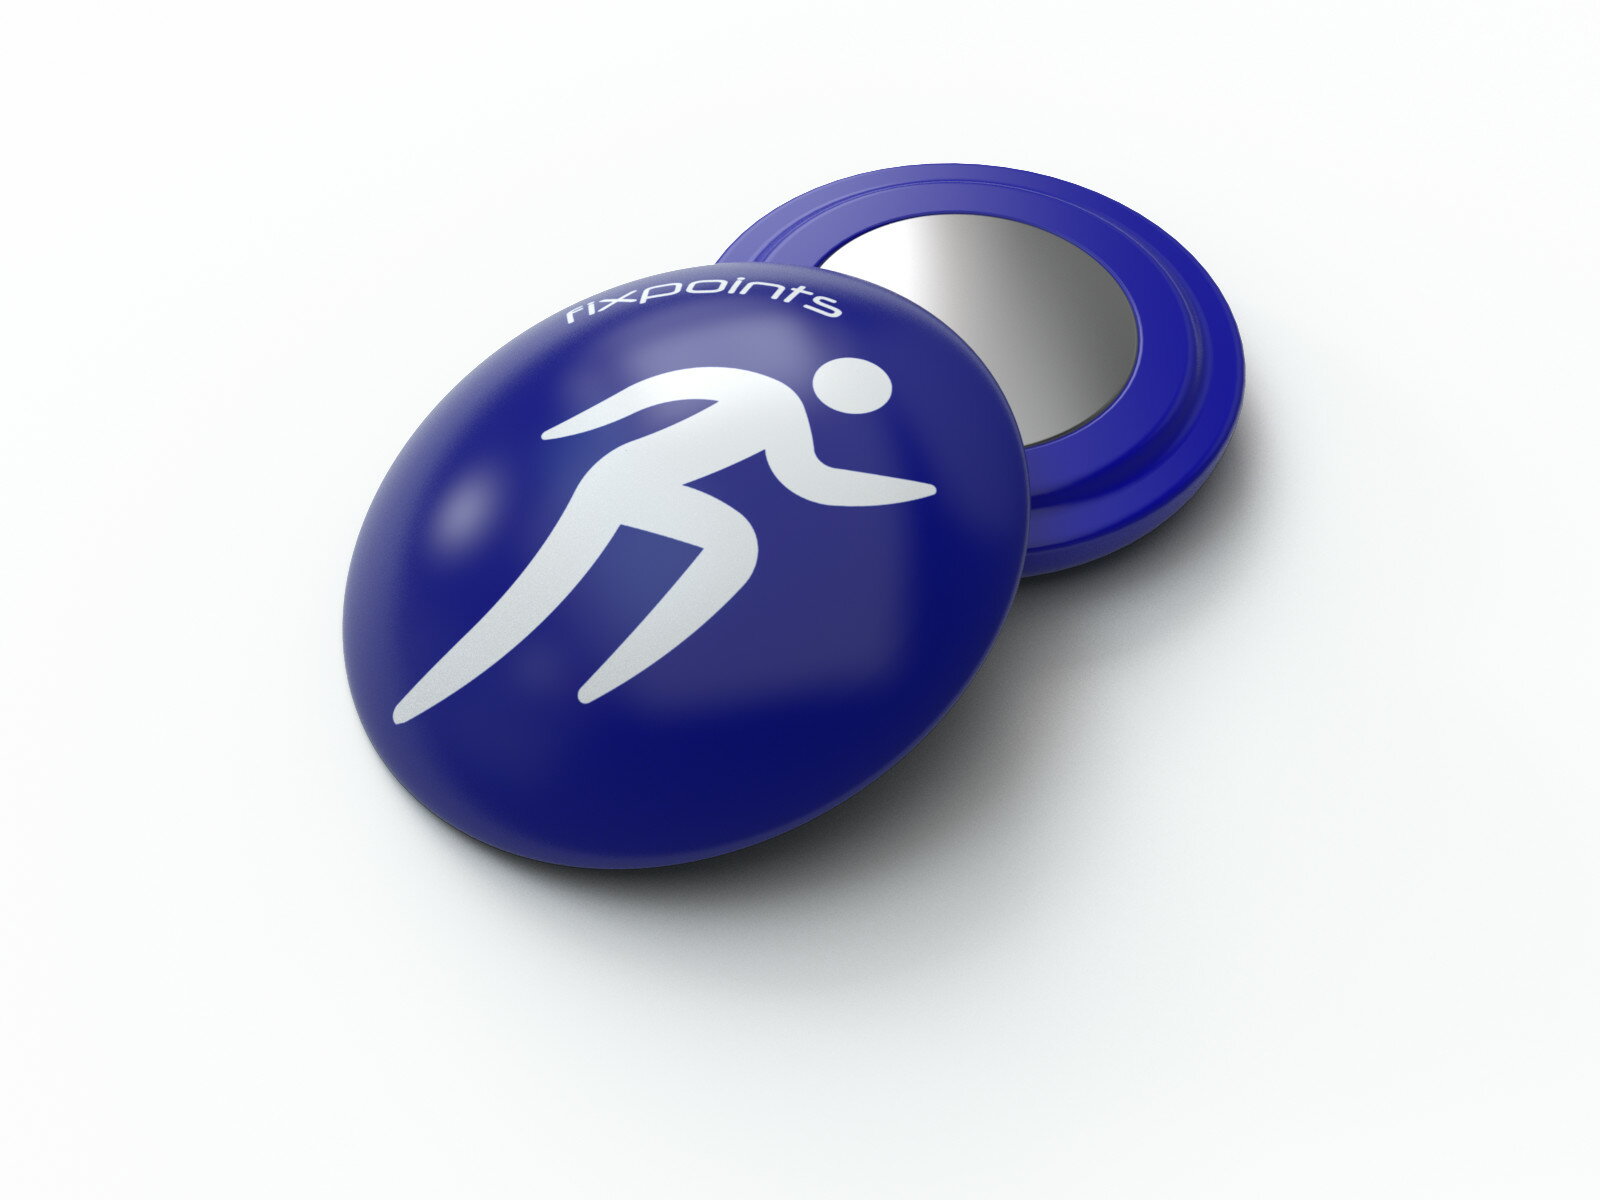 騎跑泳者-德國騛點/Fixpoints號碼布磁扣 (藍色跑者)